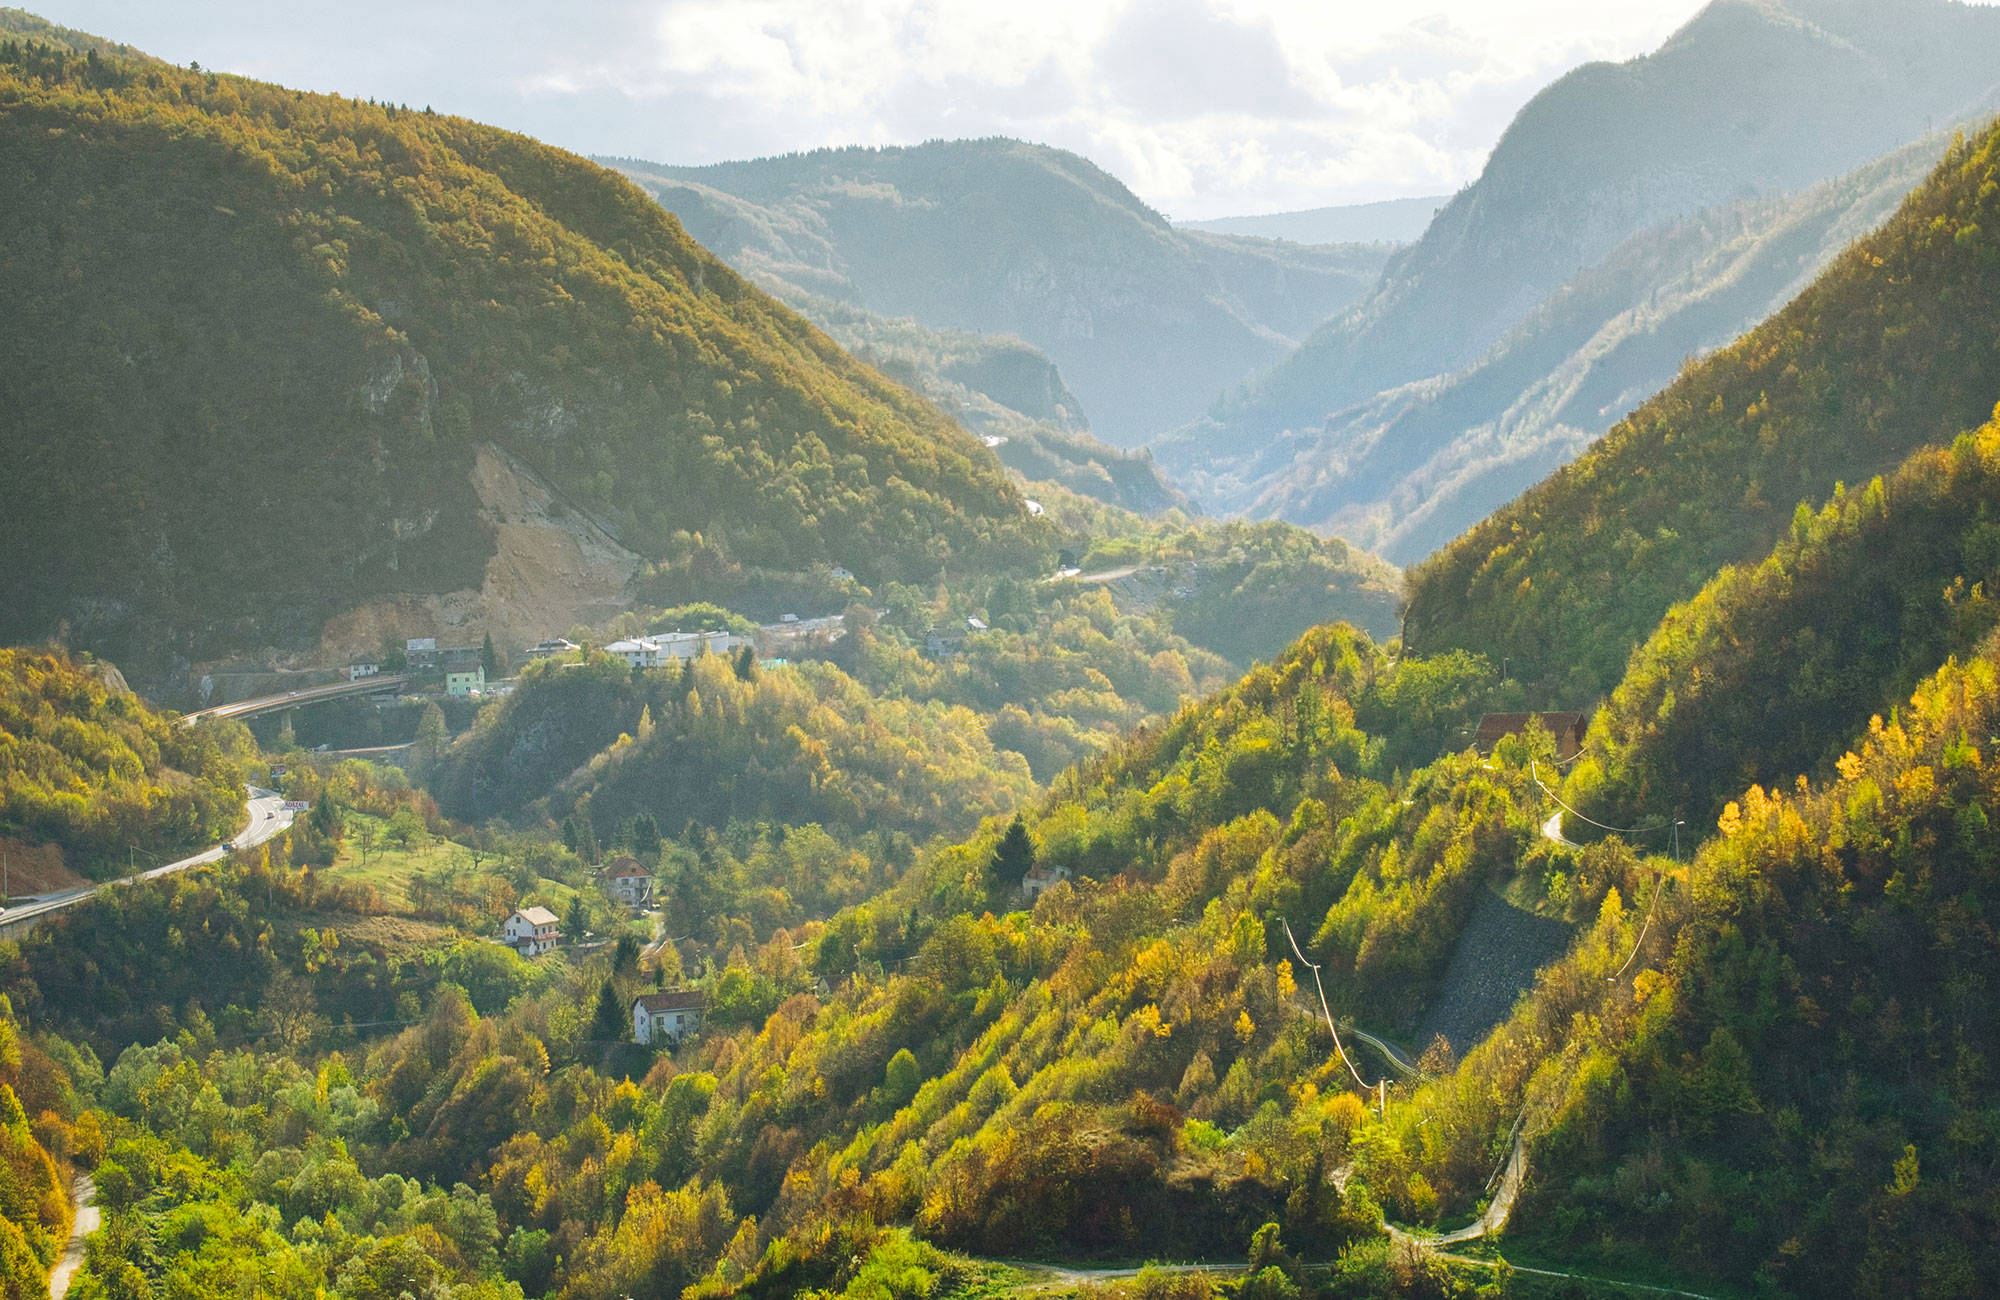 Rejs gennem de fantastiske landskaber i Montenegro